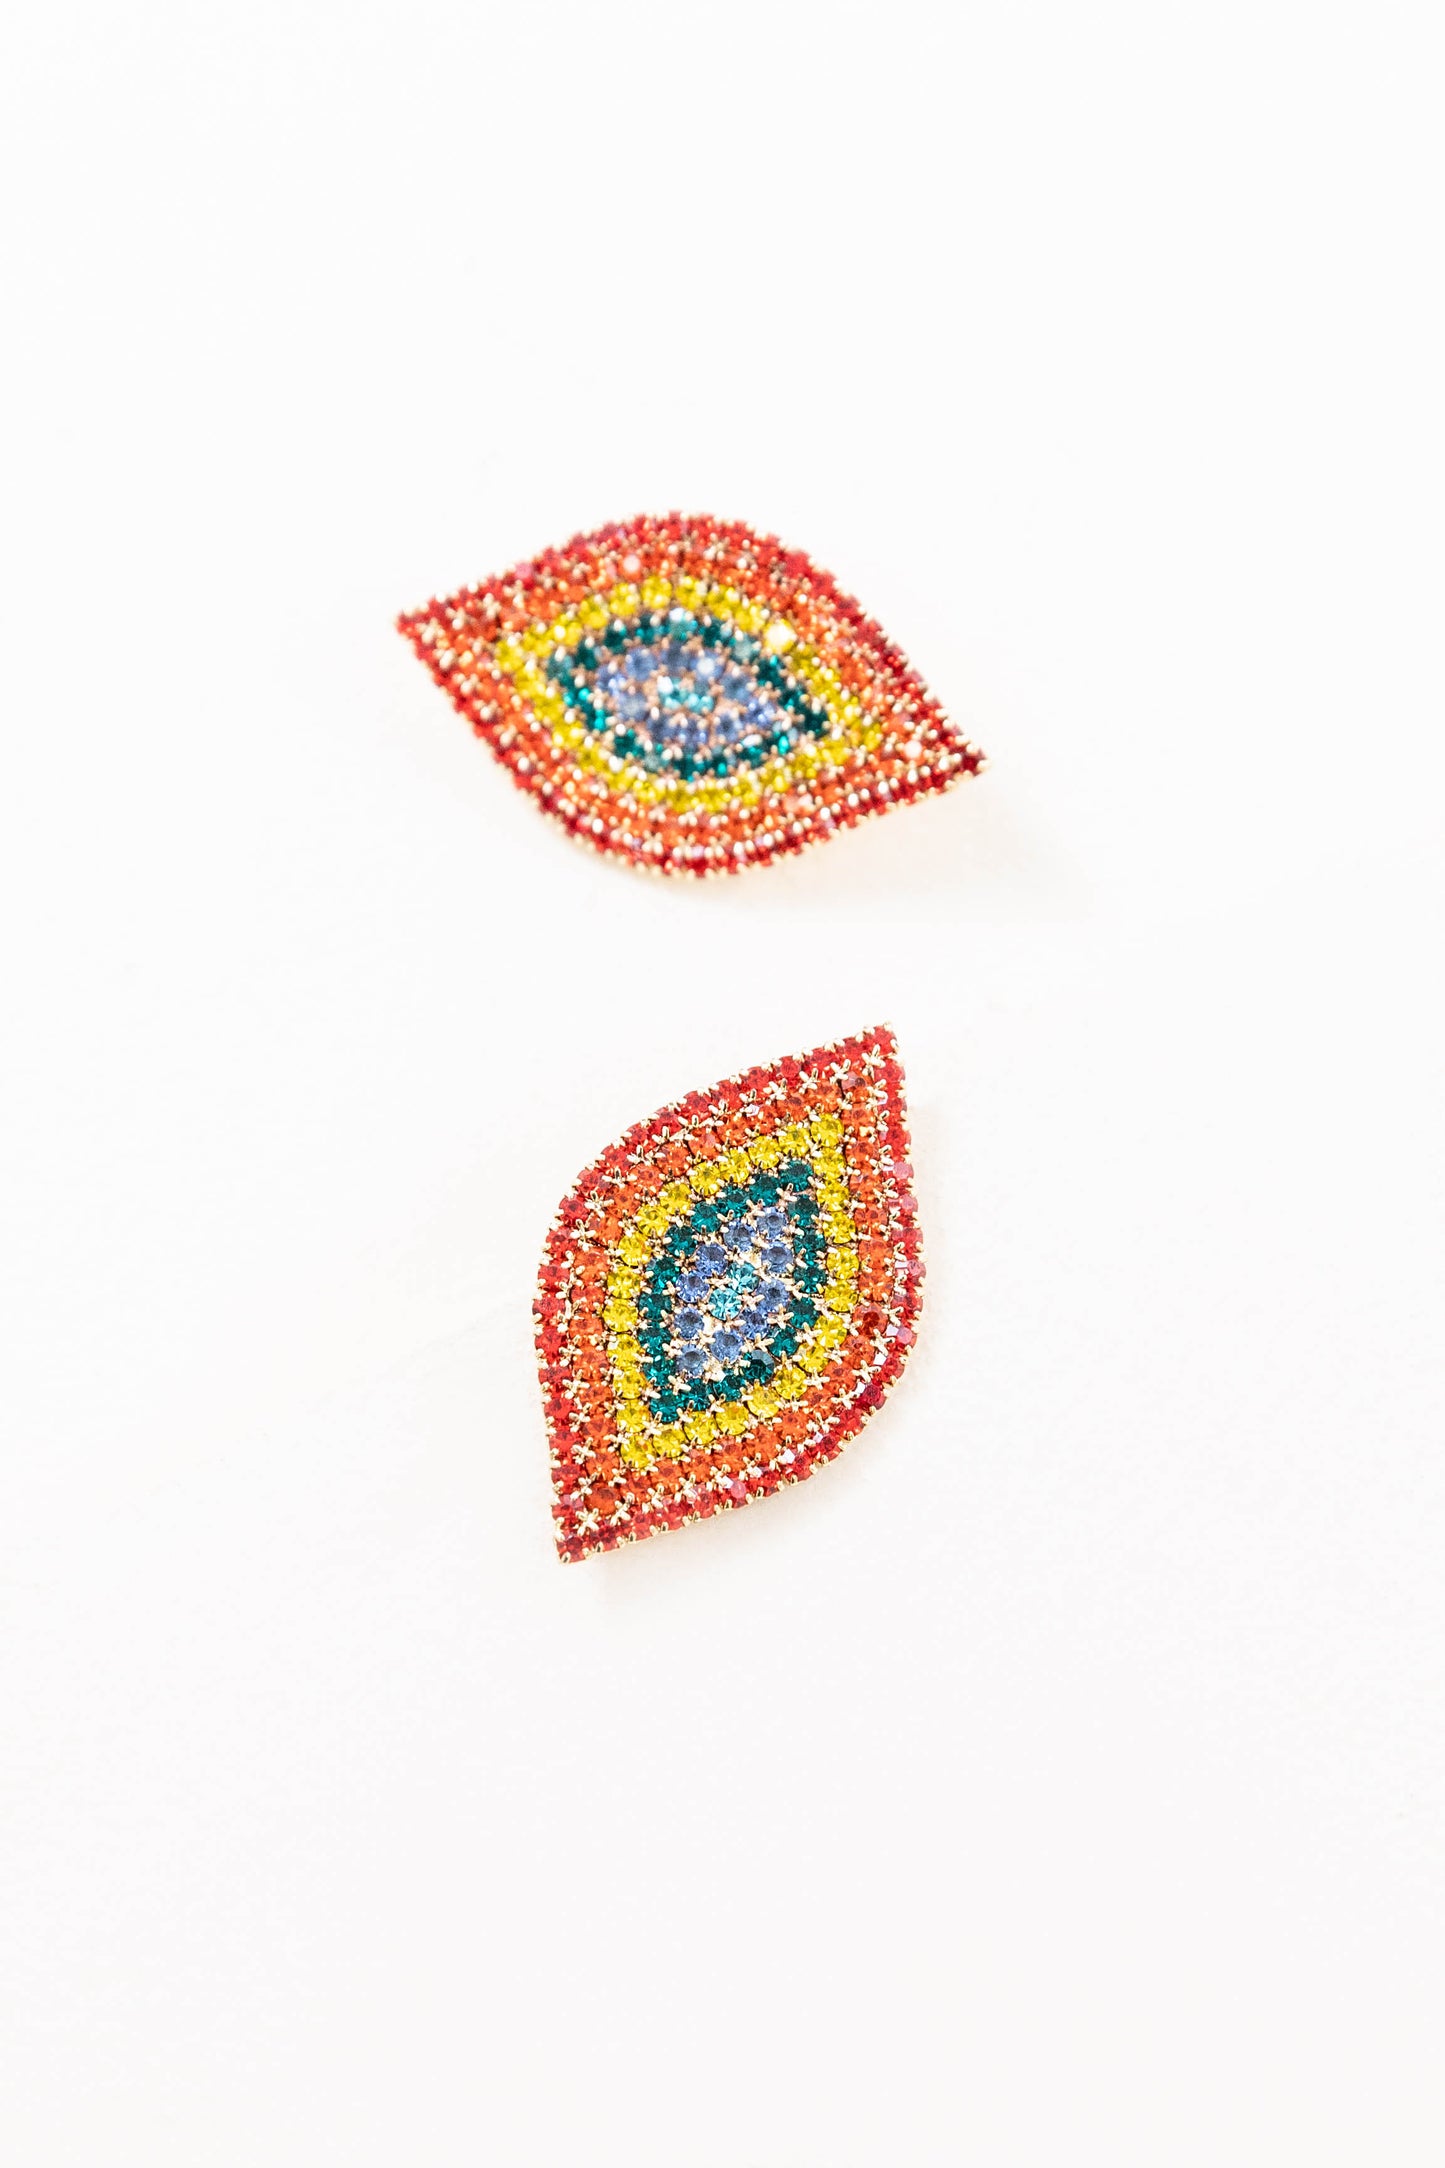 Rainbow Spindle Earrings